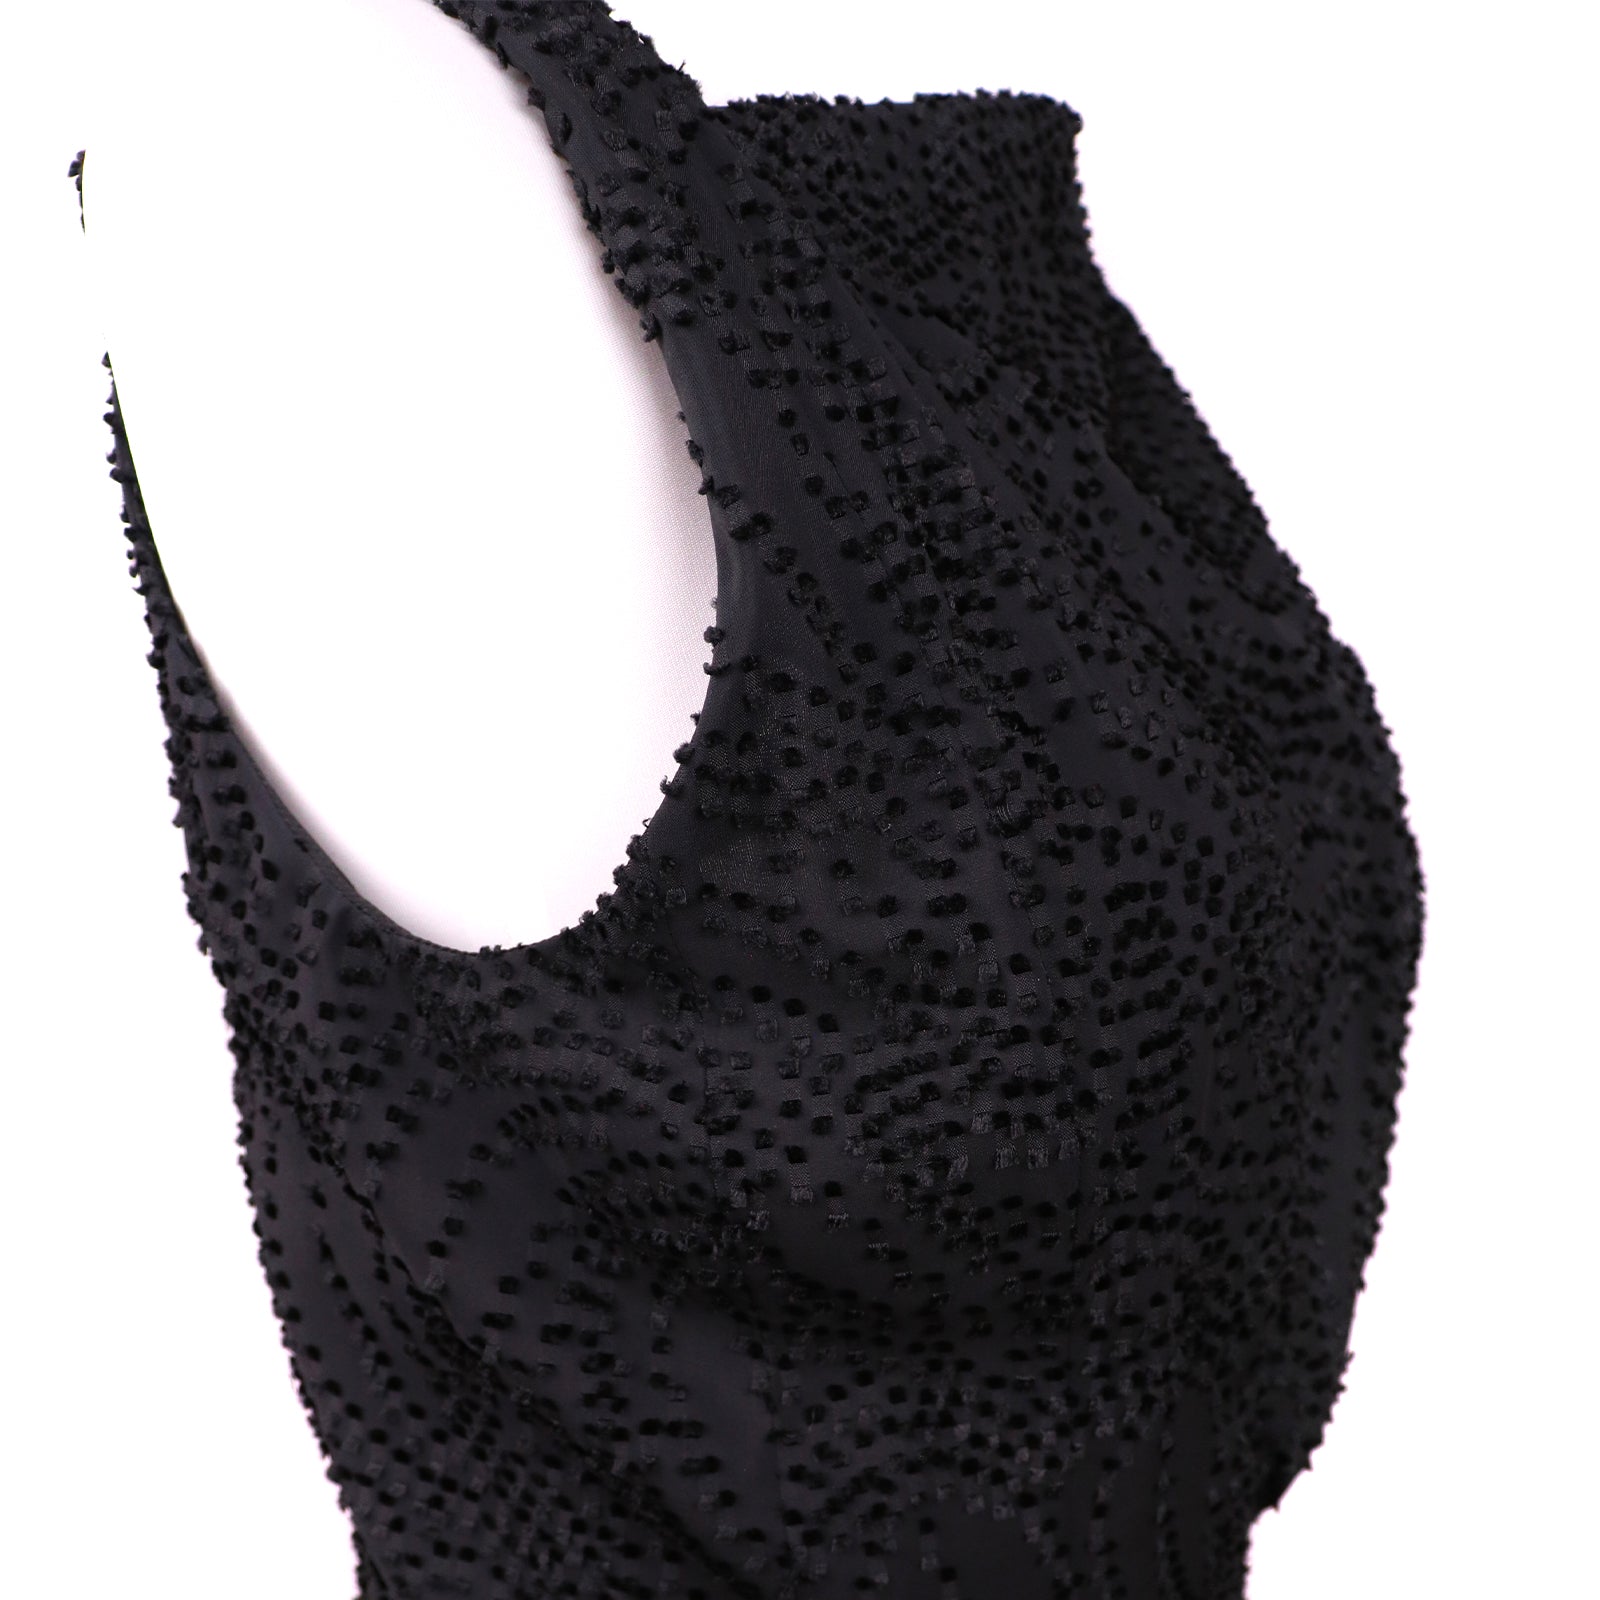 BALENCIAGA - Robe noire (T40)